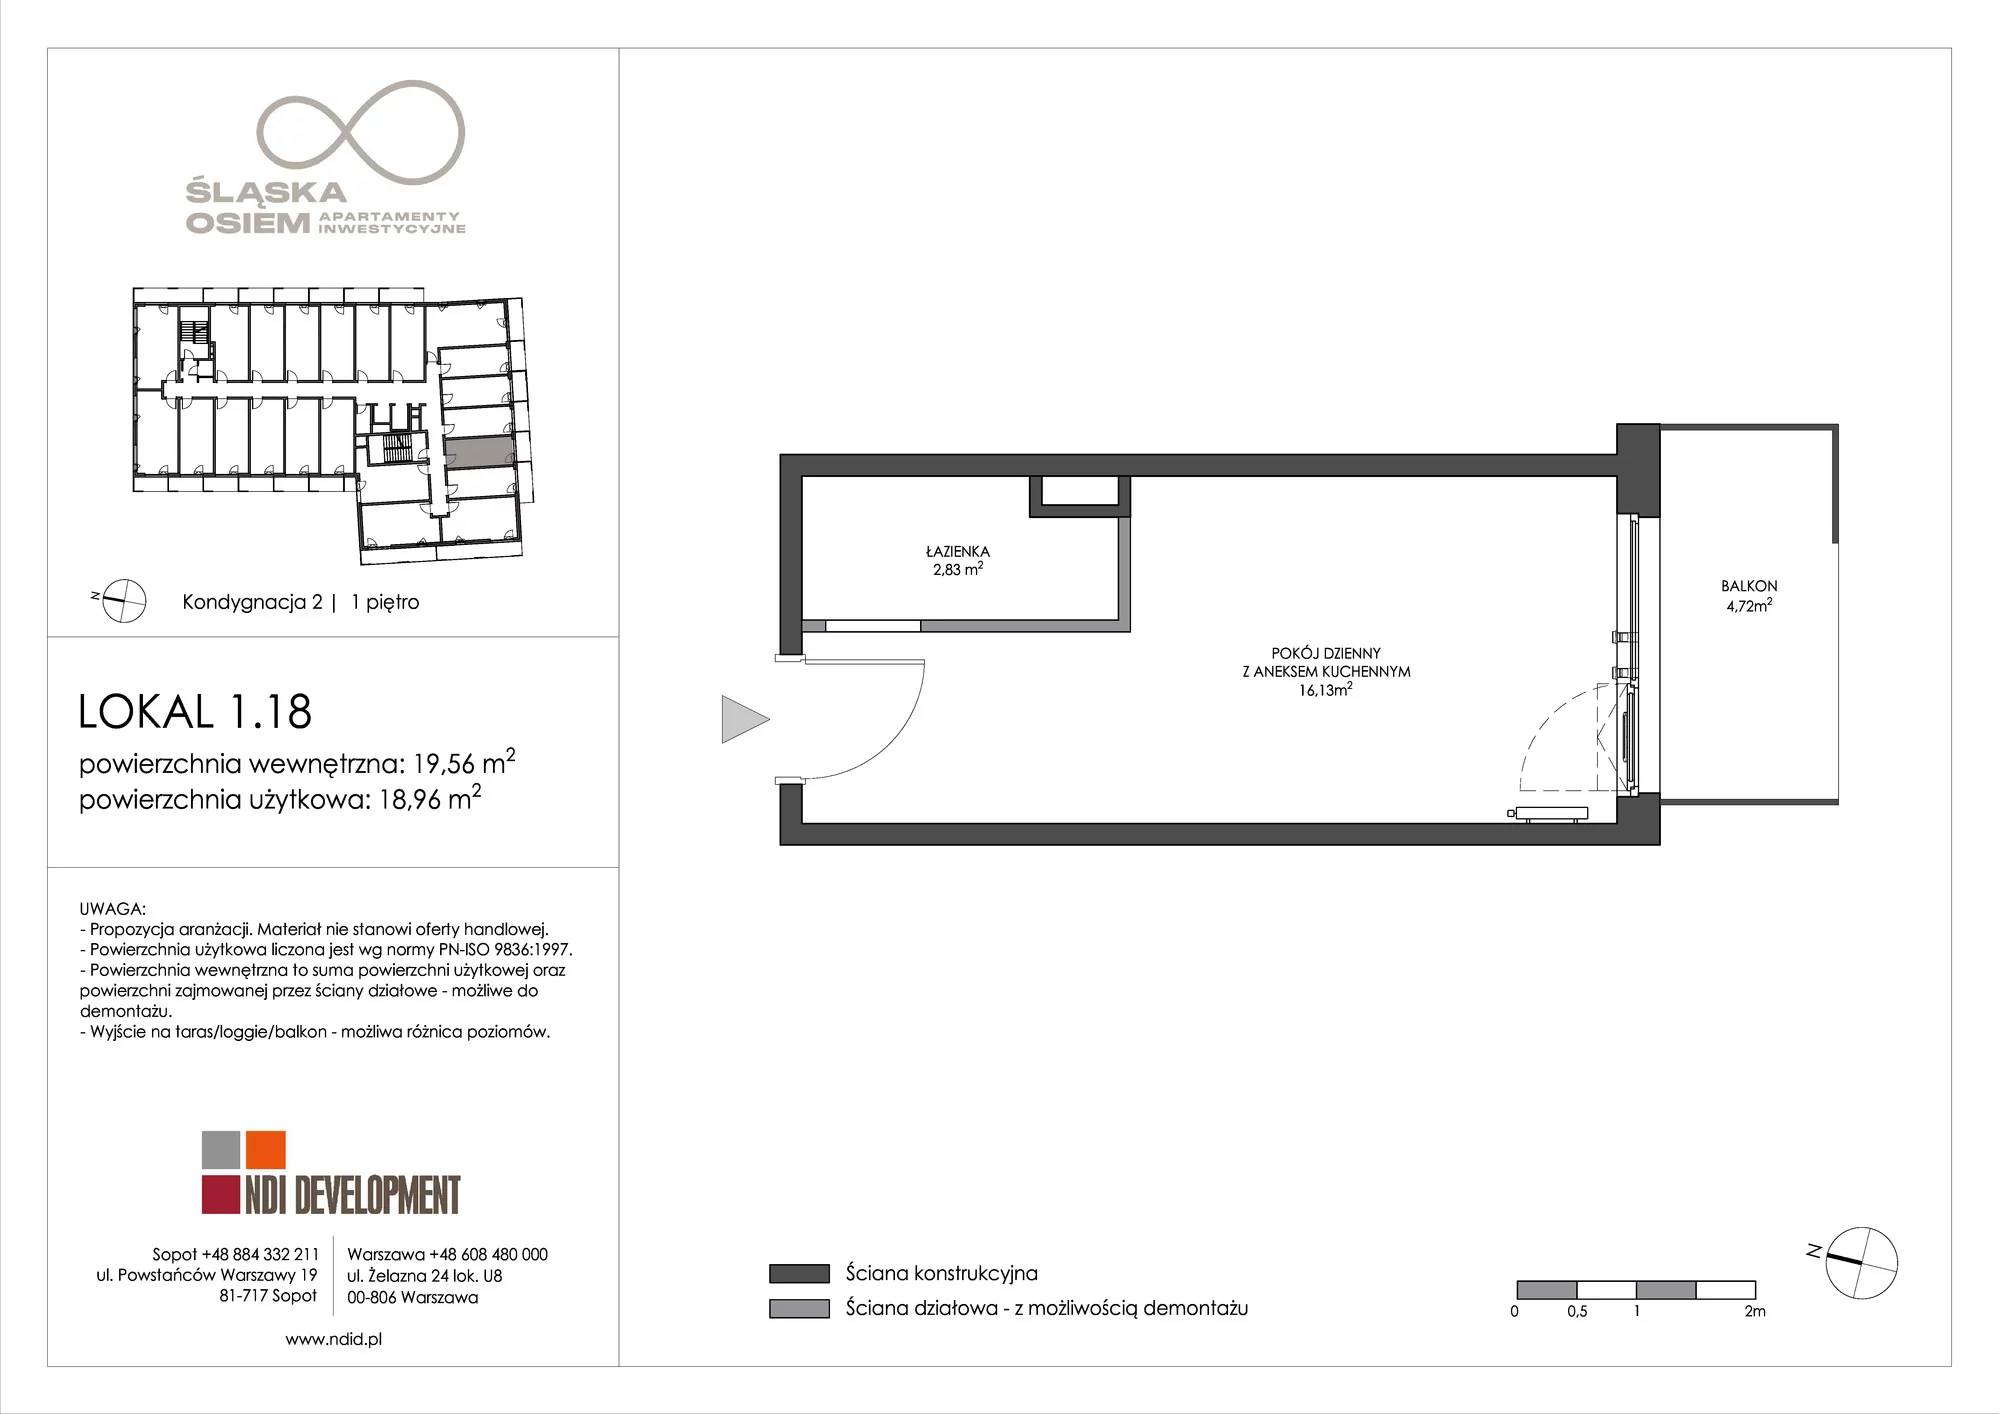 Apartament inwestycyjny 19,56 m², piętro 1, oferta nr 1.18, Śląska Osiem, Gdańsk, Przymorze, ul. Śląska 8